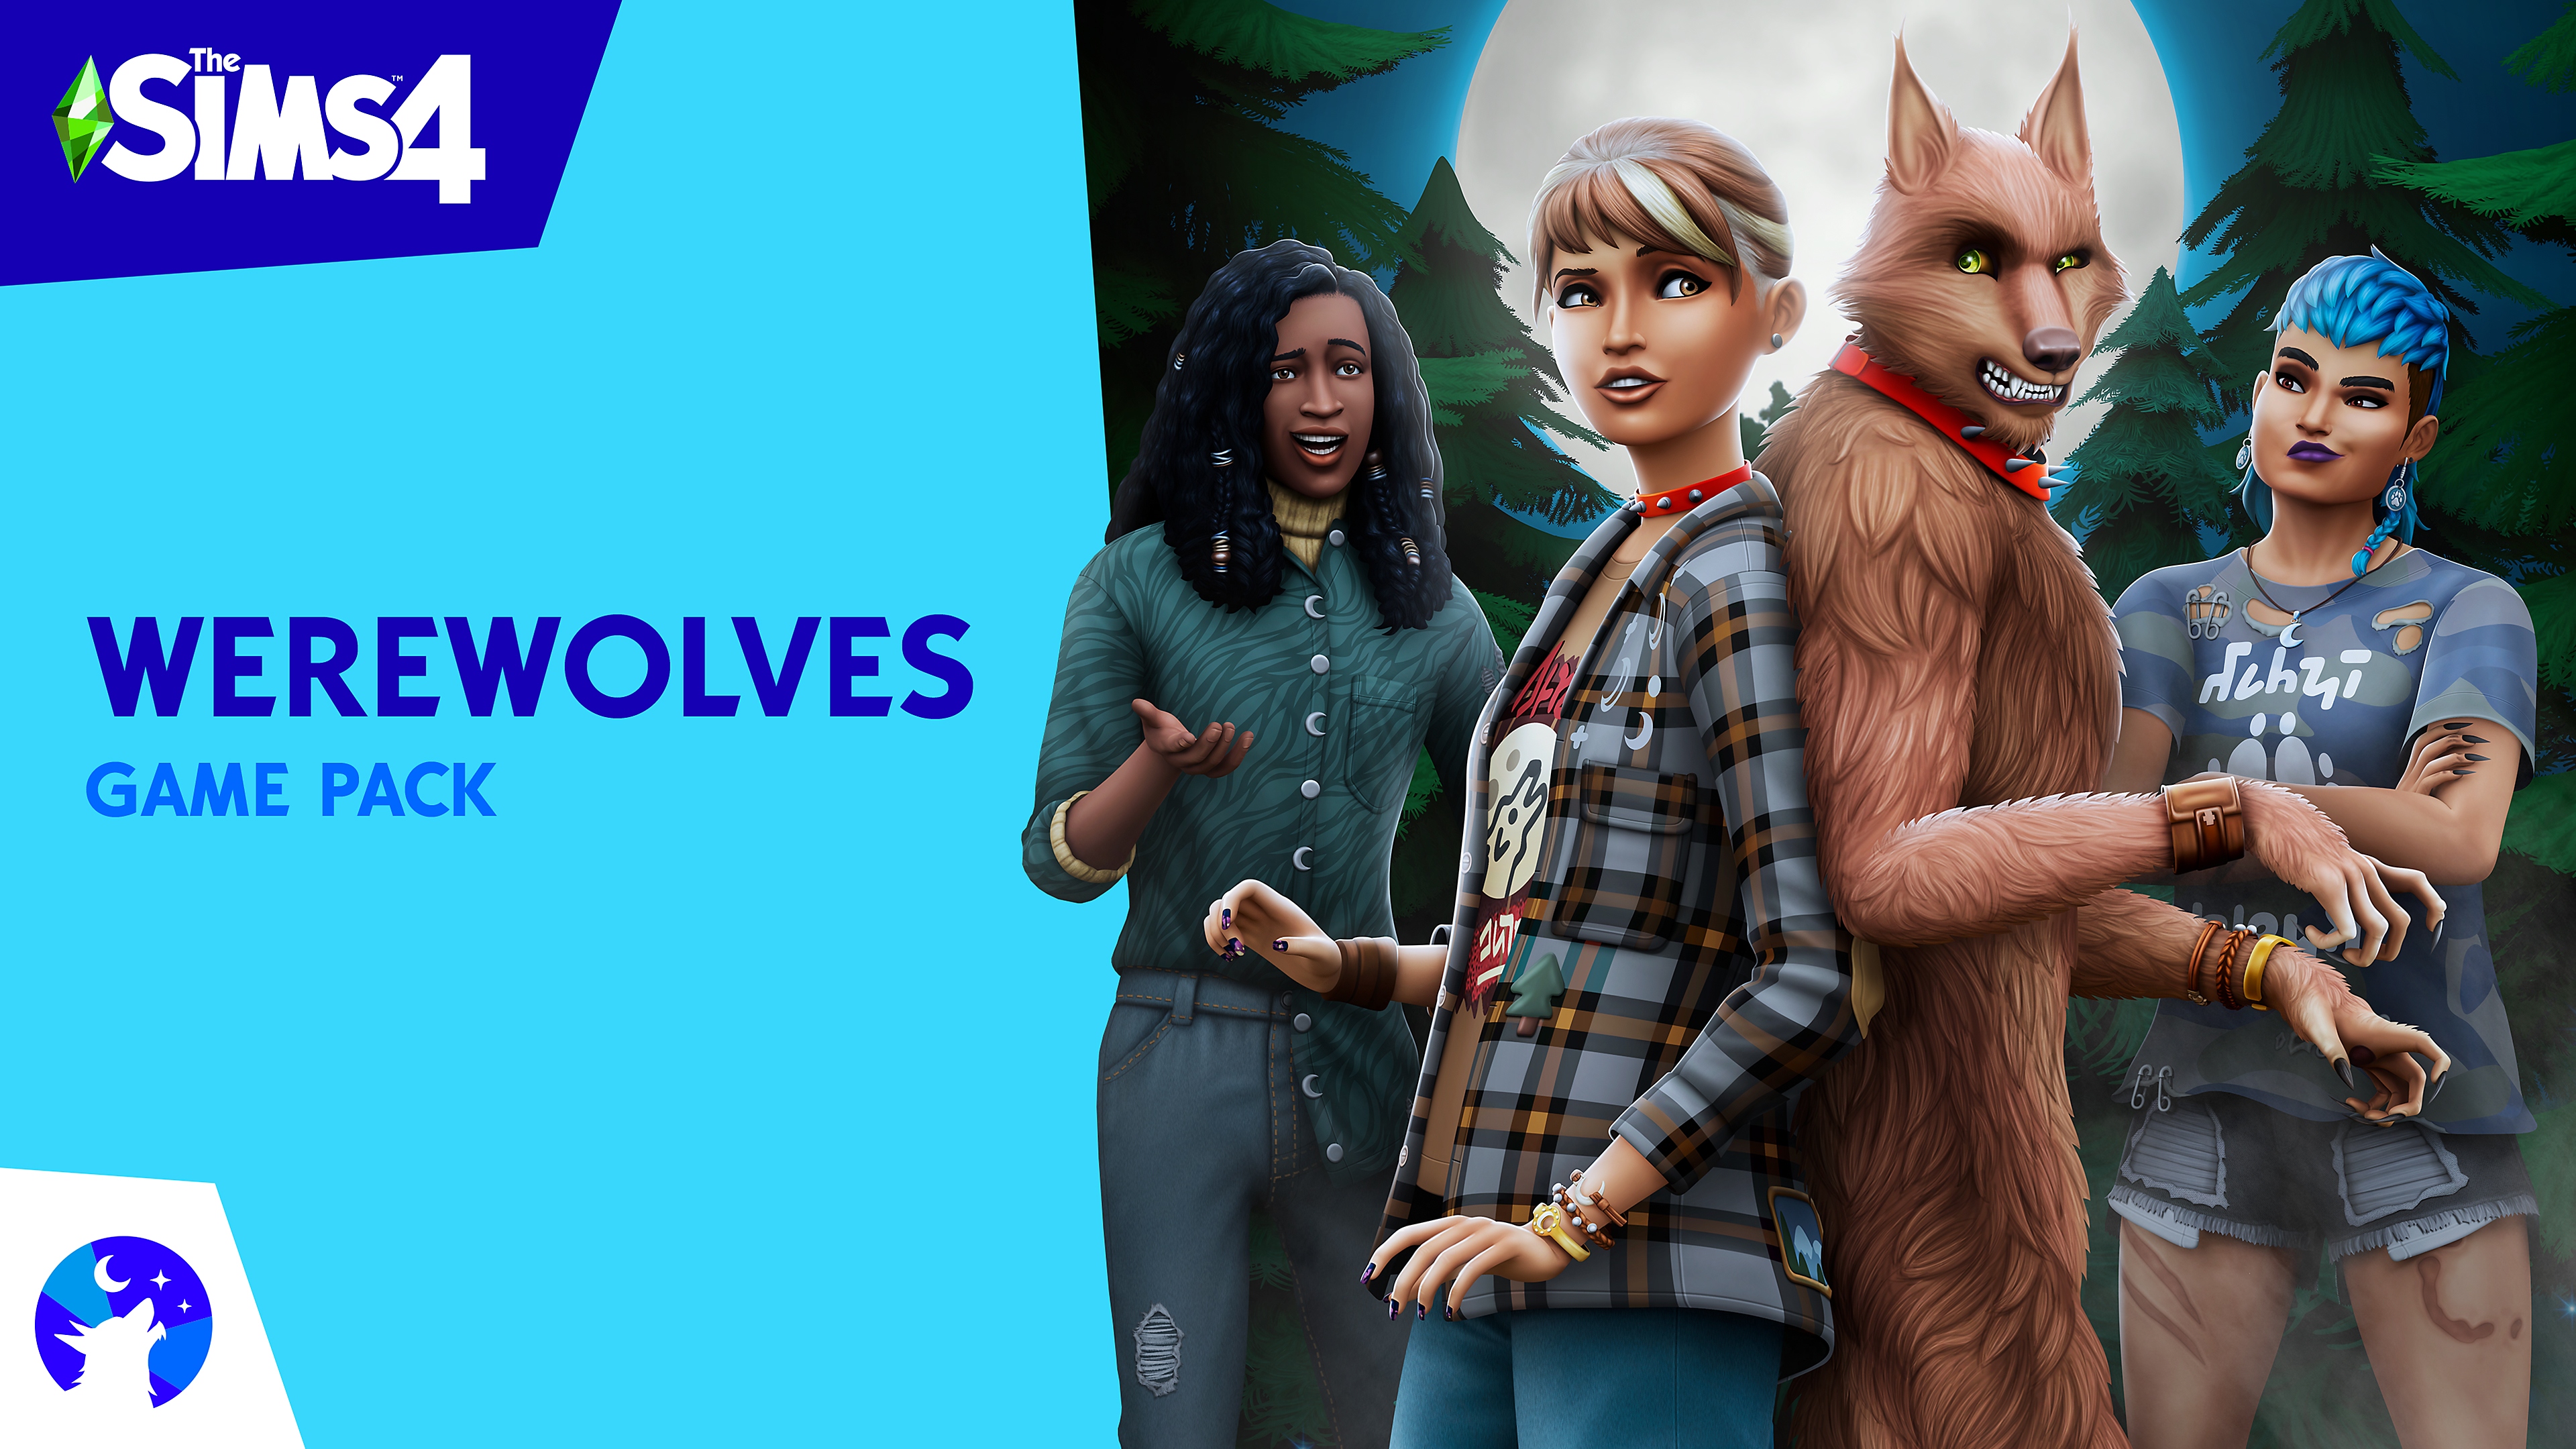 Key-art van De Sims 4 Weerwolven Game Pack met daarop Sims-personages en een weerwolf